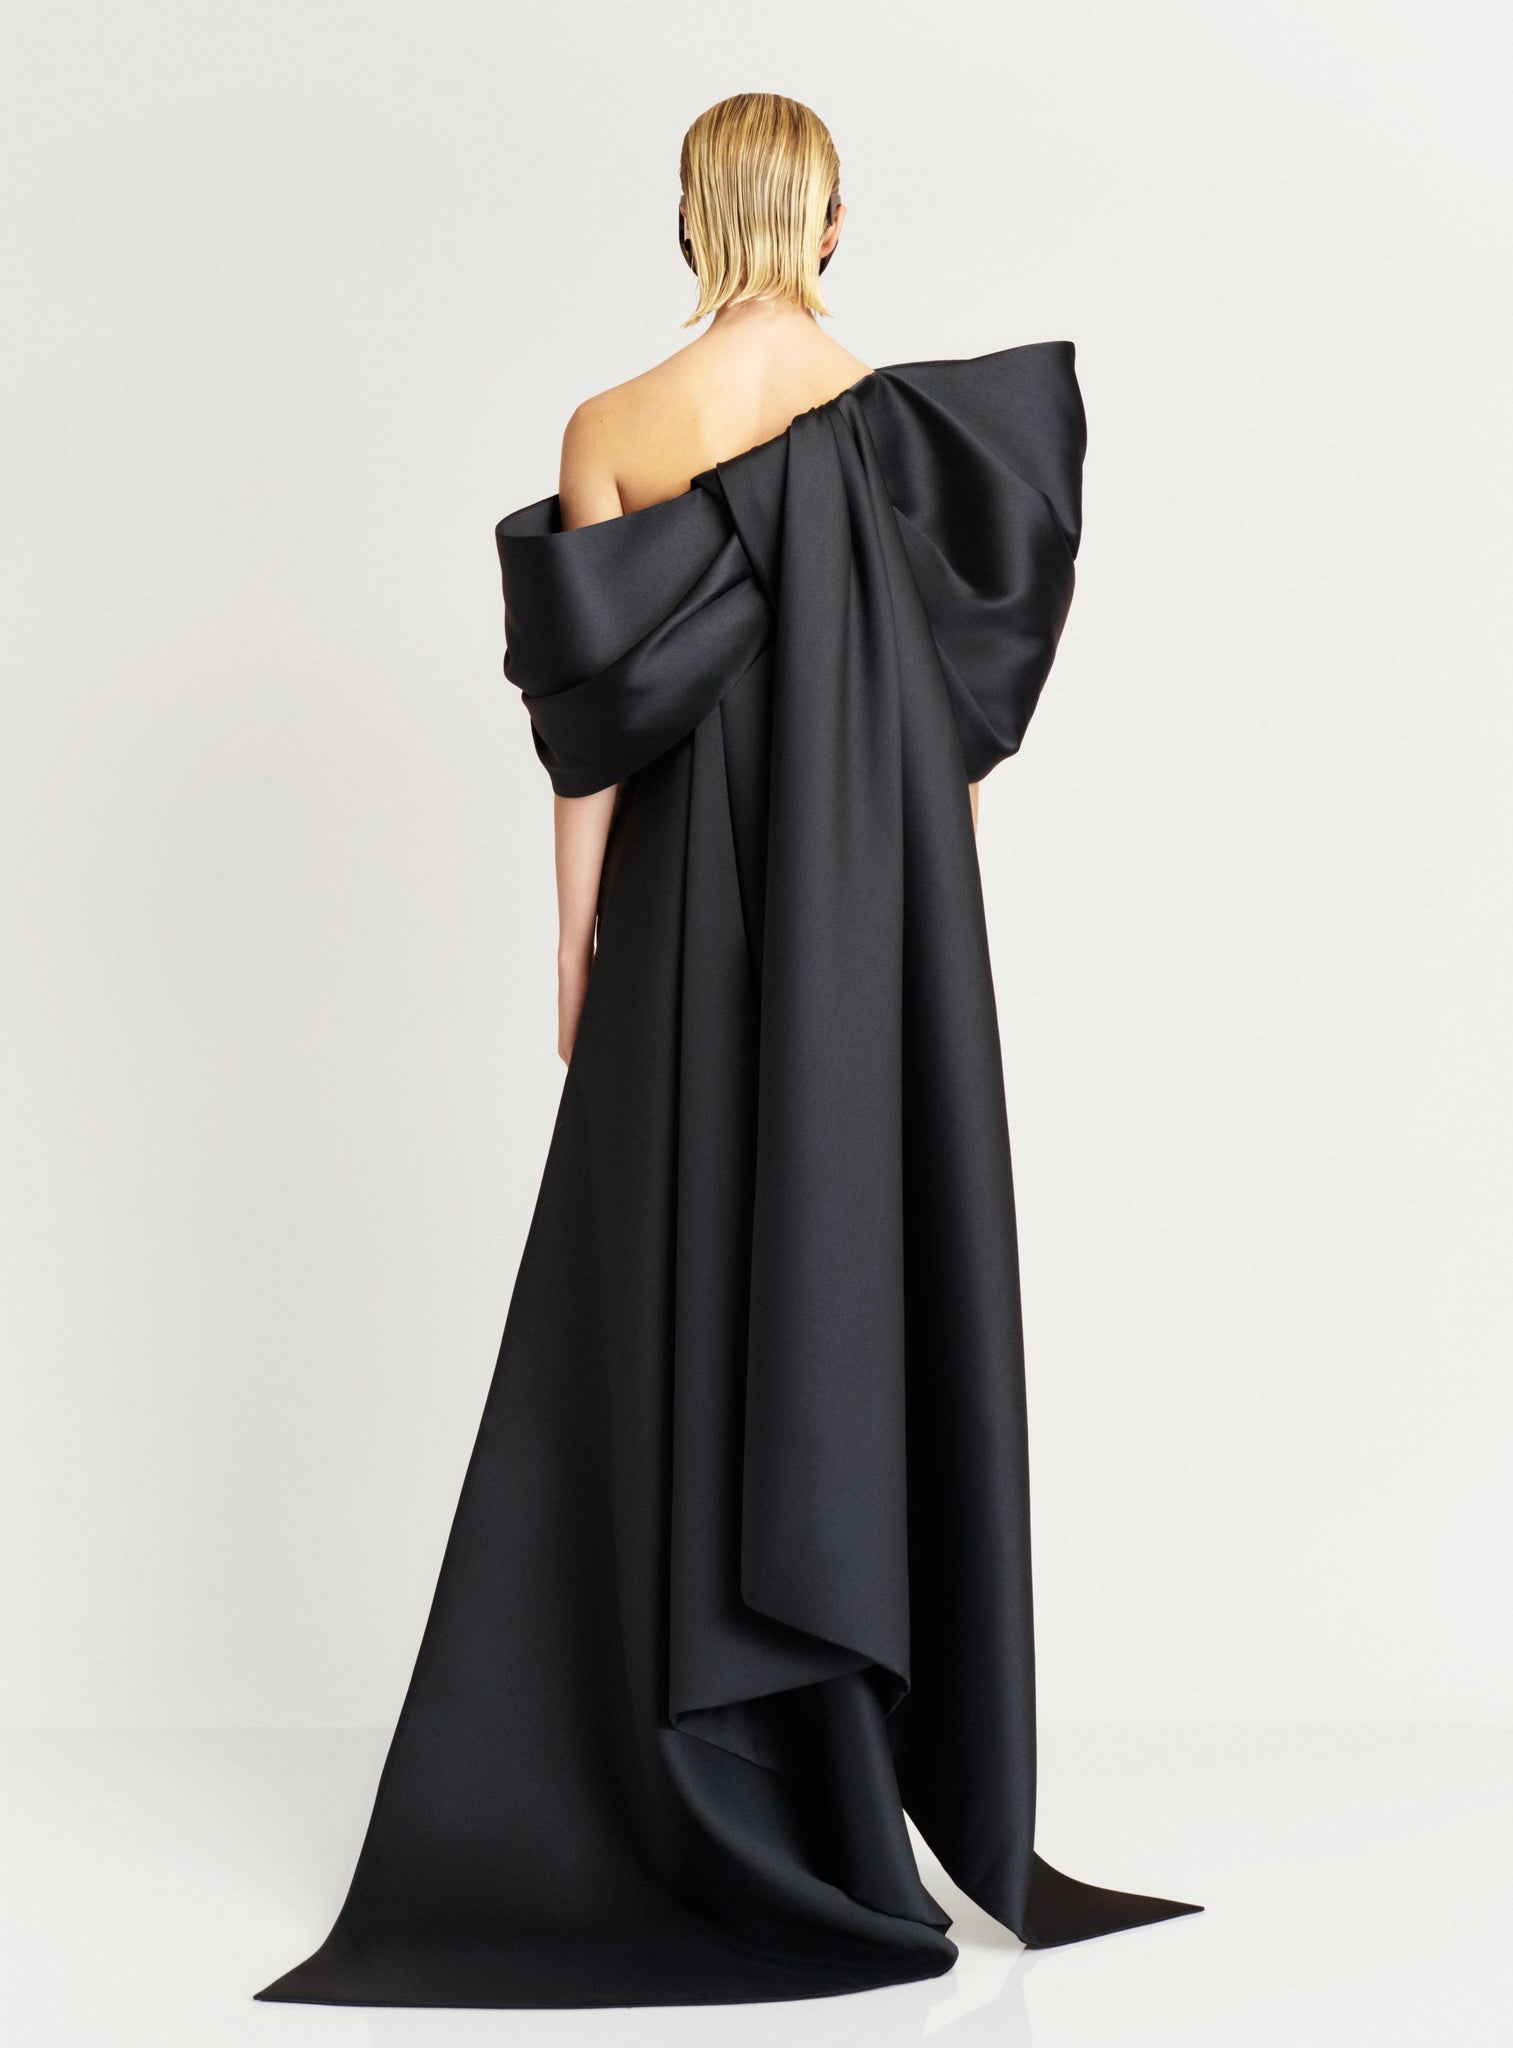 The Raye Maxi Dress in Black